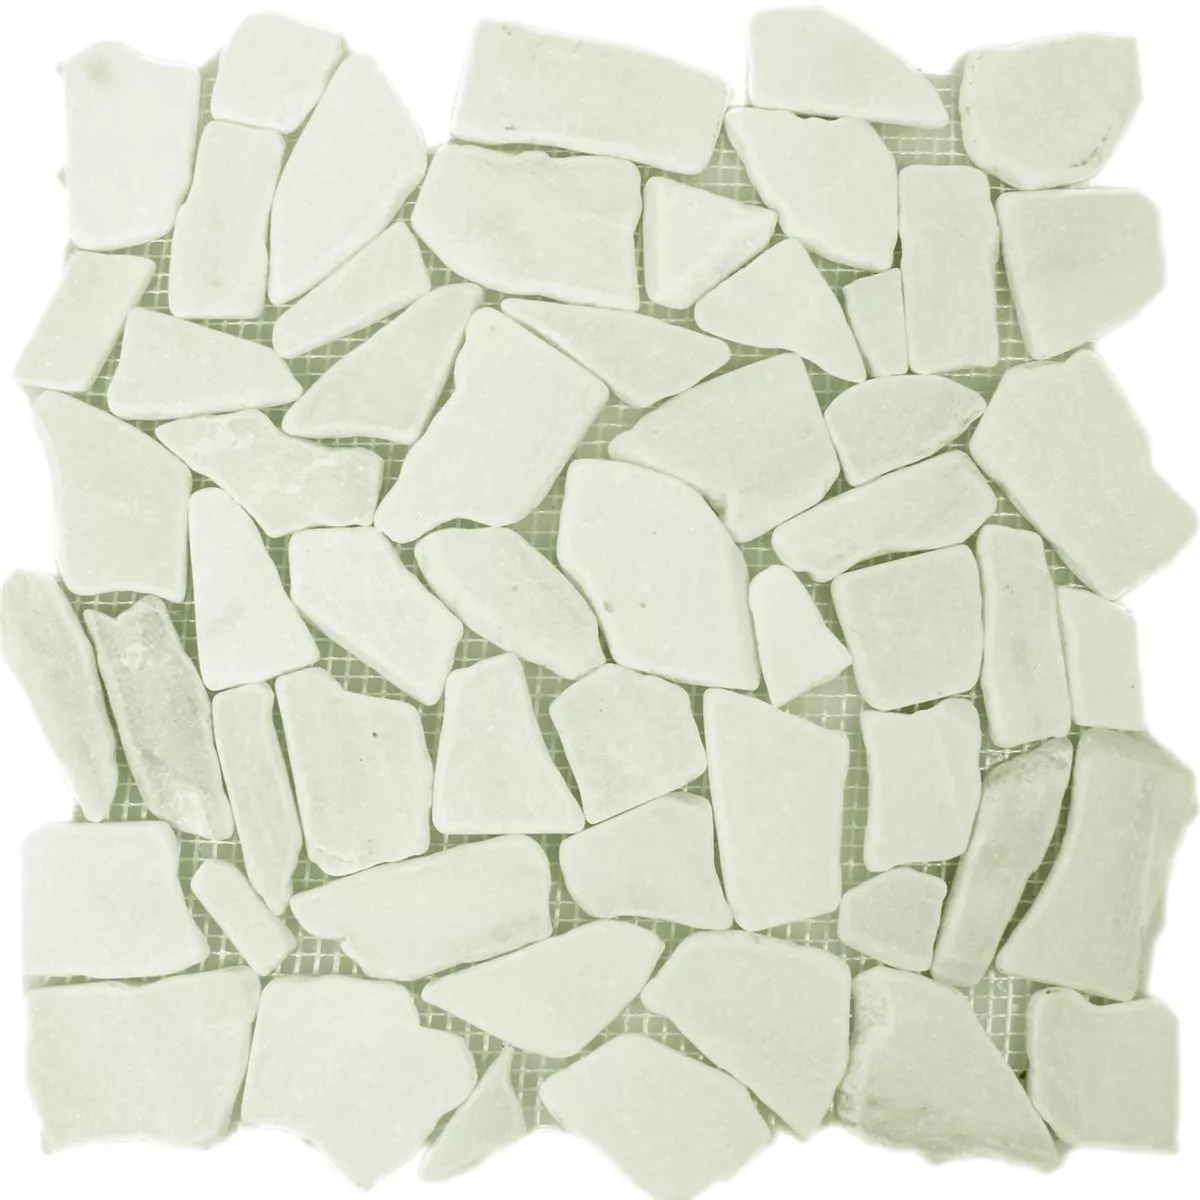 Sample Mosaic Tiles Broken Marble White